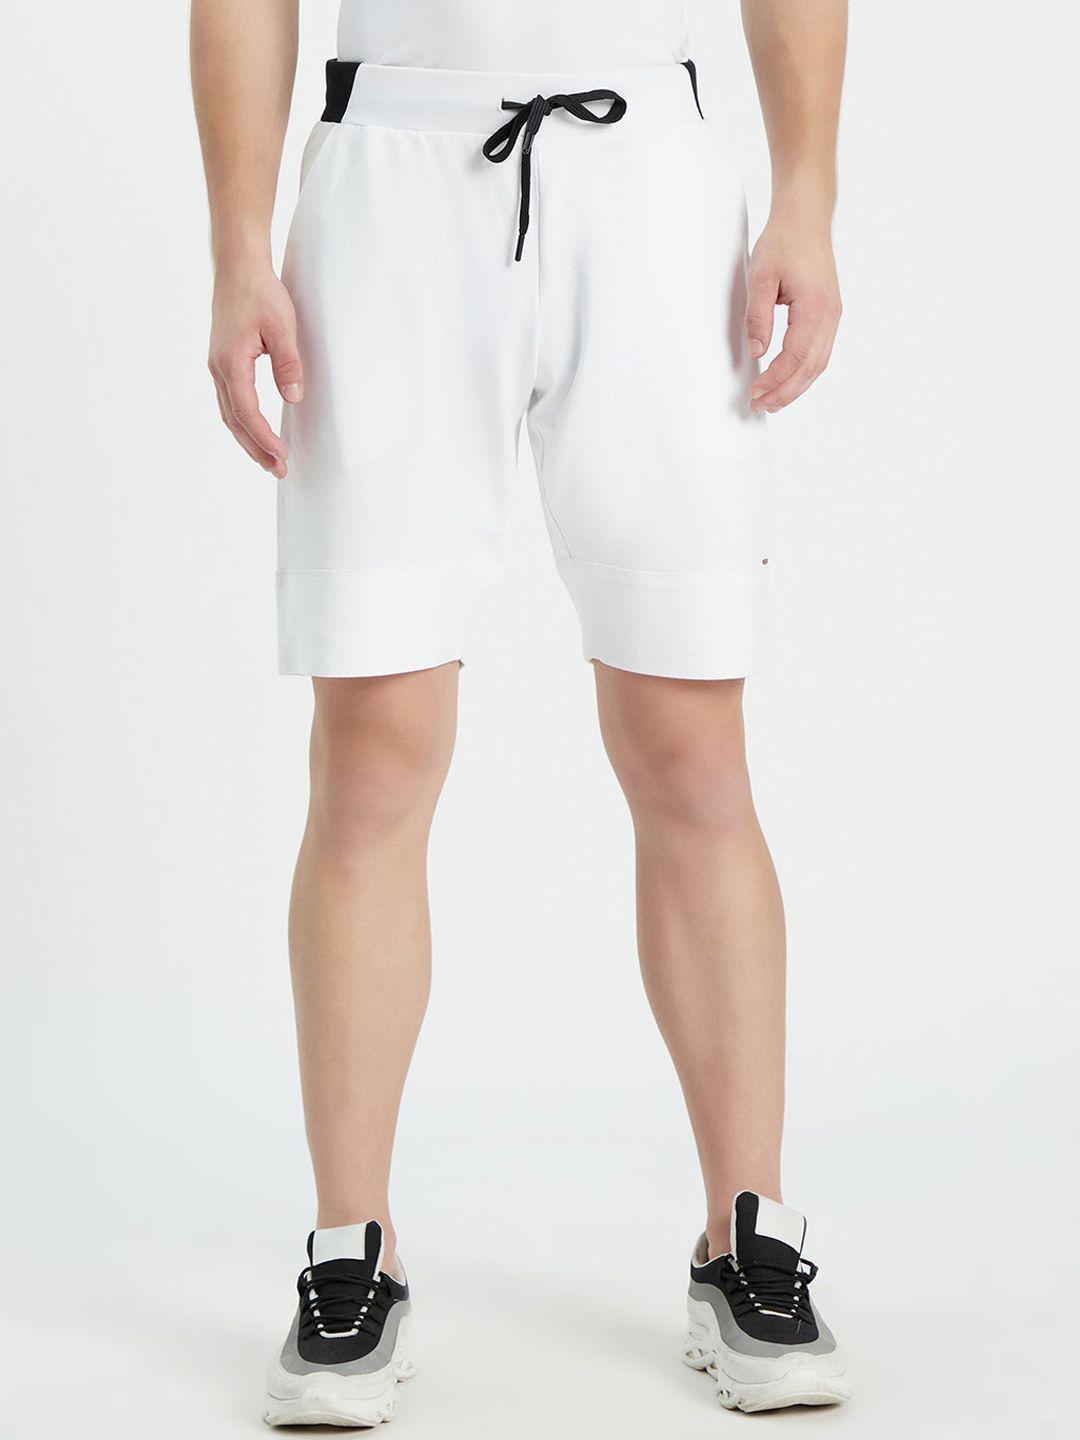 edrio men white shorts